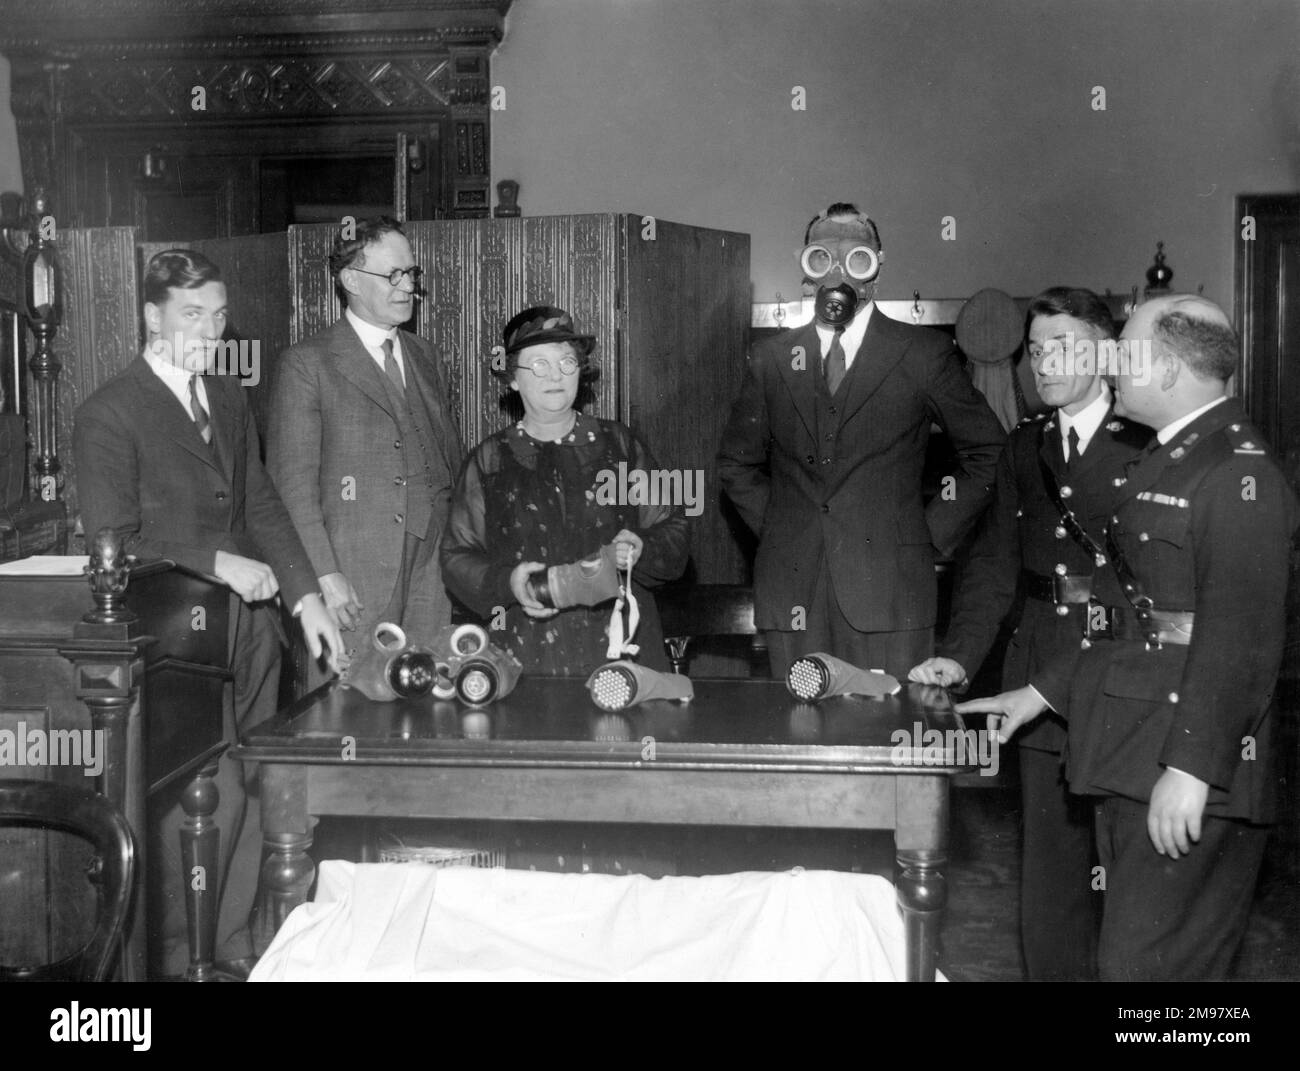 Gas and smoke mask training, WW2. Stock Photo